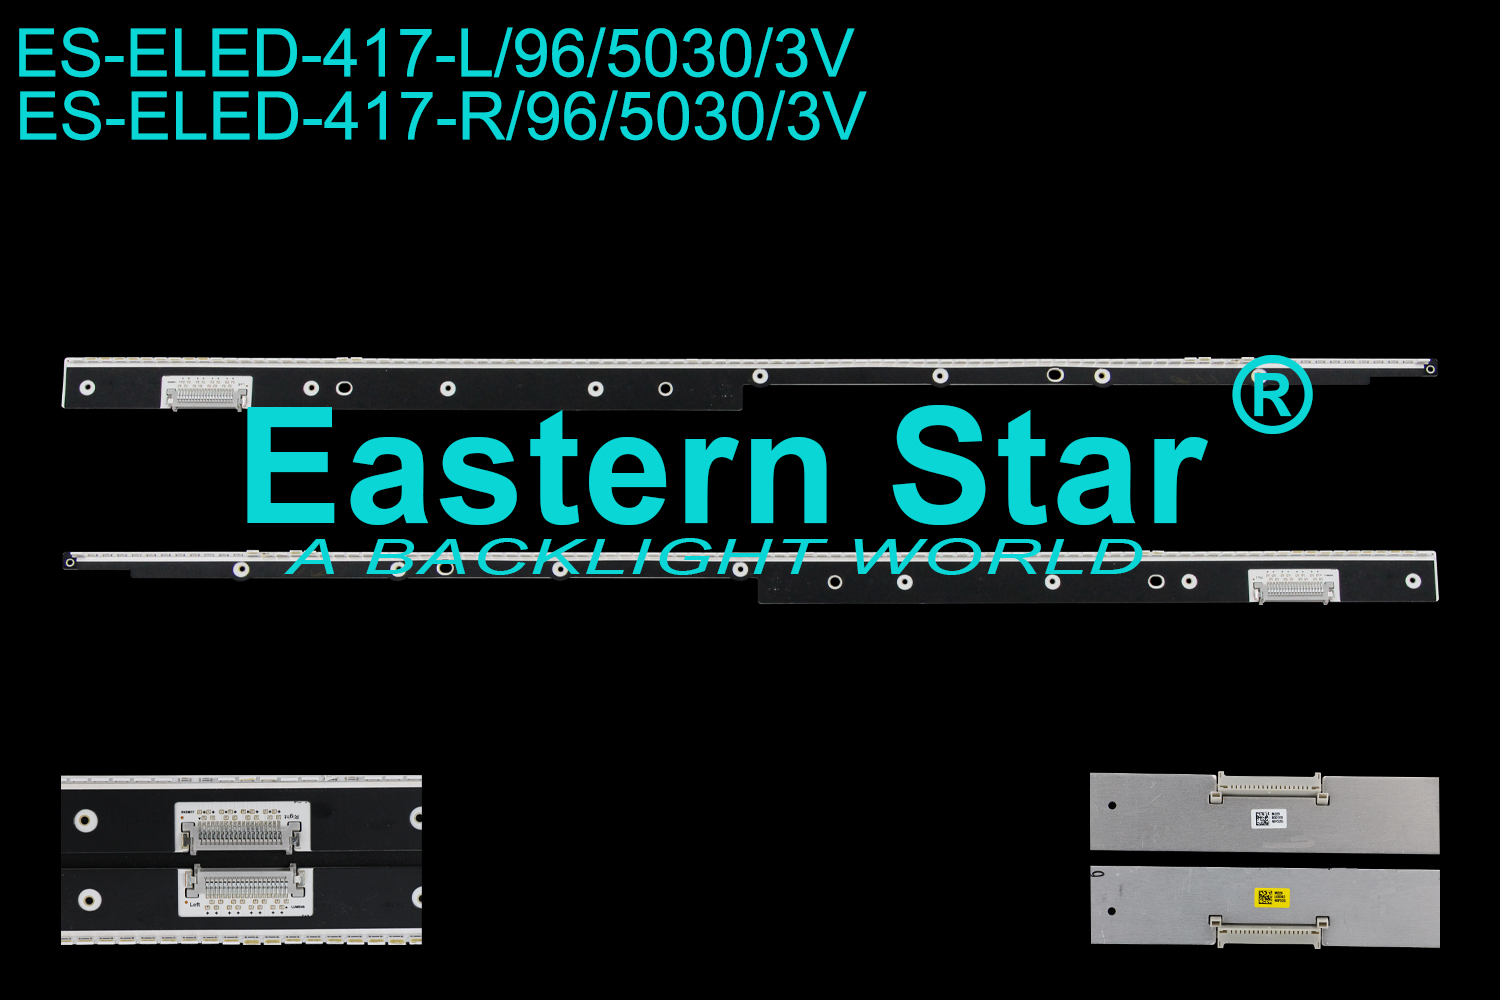 ES-ELED-417 ELED/EDGE TV backlight use for 46'' Samsung UE46D7000-8000 46-5030-LED-MCPCB-R, 46-5030-LED-MCPCB-L /J6L4-460SMA-R3[11，04，26], J6L4-460SMB-R3[11，04，26] LED STRIPS(2)